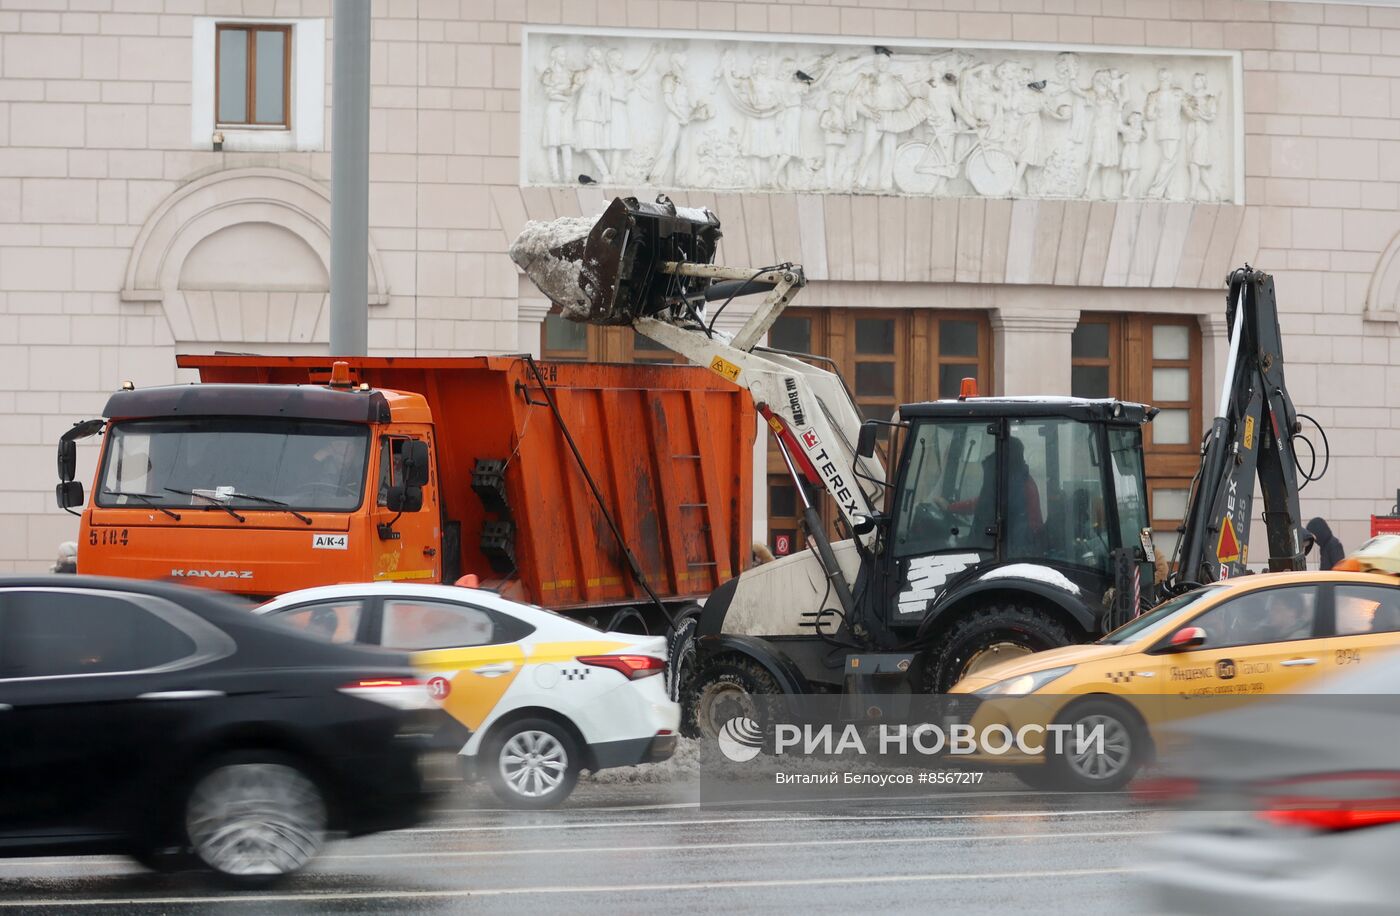 Коммунальные службы ликвидируют последствия снегопада в Москве